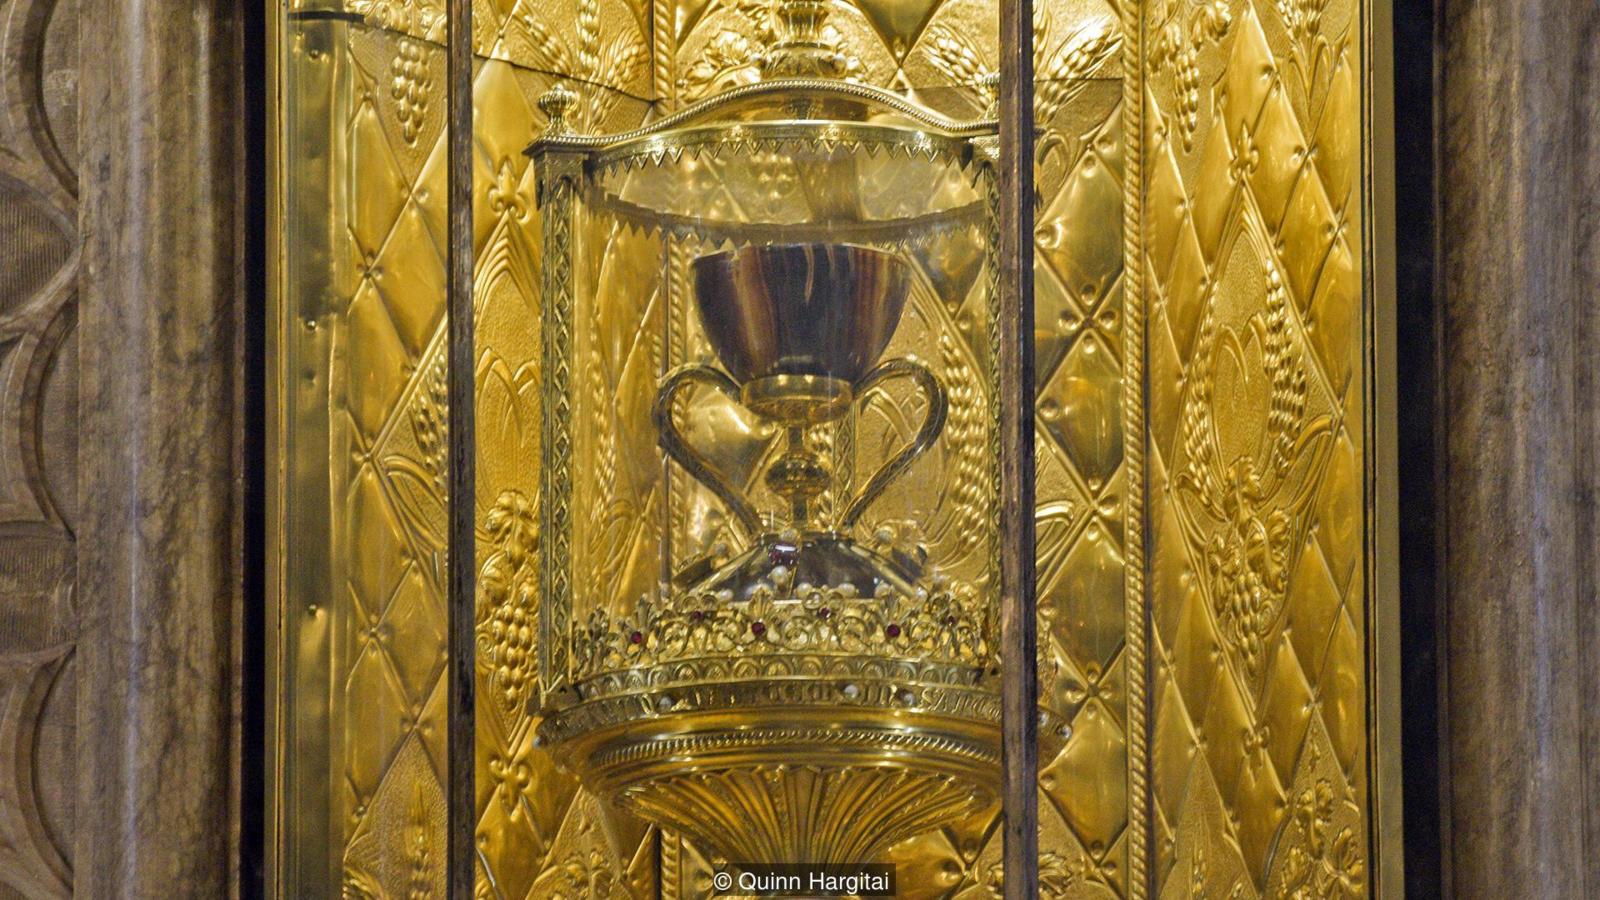 Чаша вырезана из агата и имеет большие золотые ручки и основание, инкрустированное драгоценными камнями (фото: Квинн Харгитай)